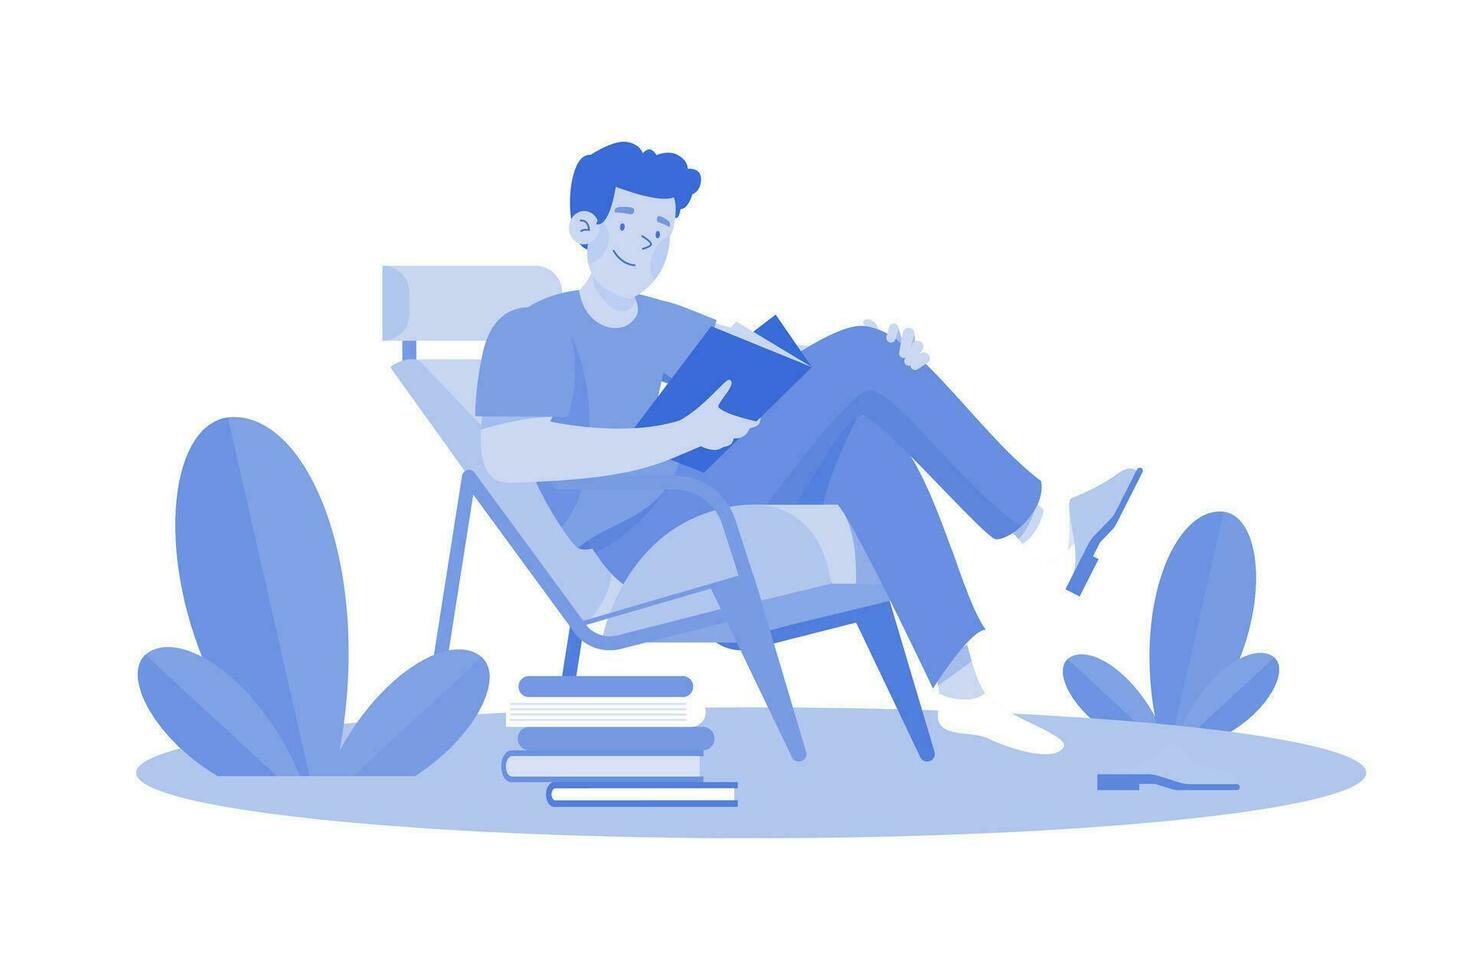 el joven se sienta en un sillón y lee un libro vector